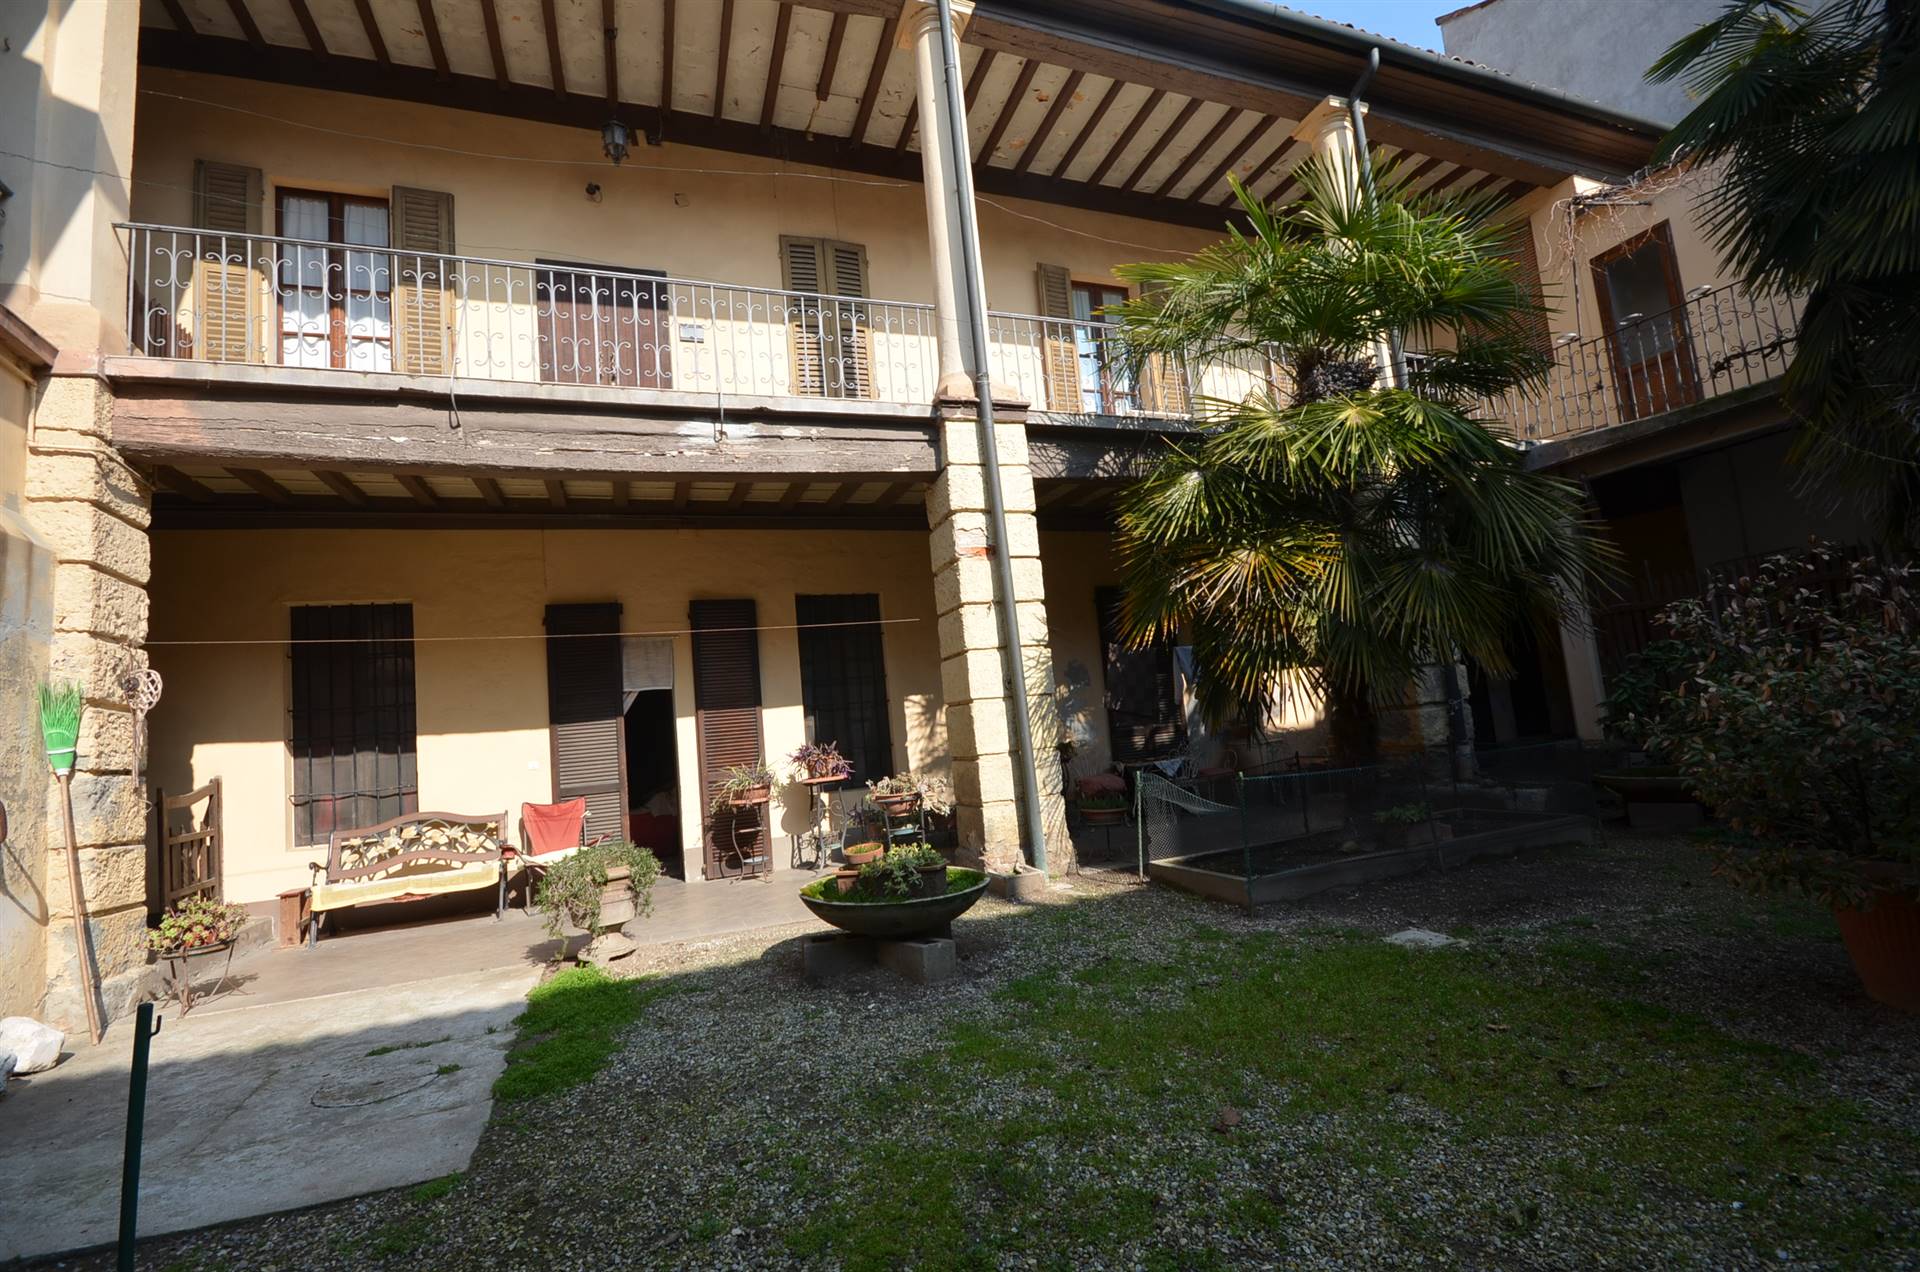 Appartamento in vendita a Soresina, 8 locali, prezzo € 190.000 | CambioCasa.it